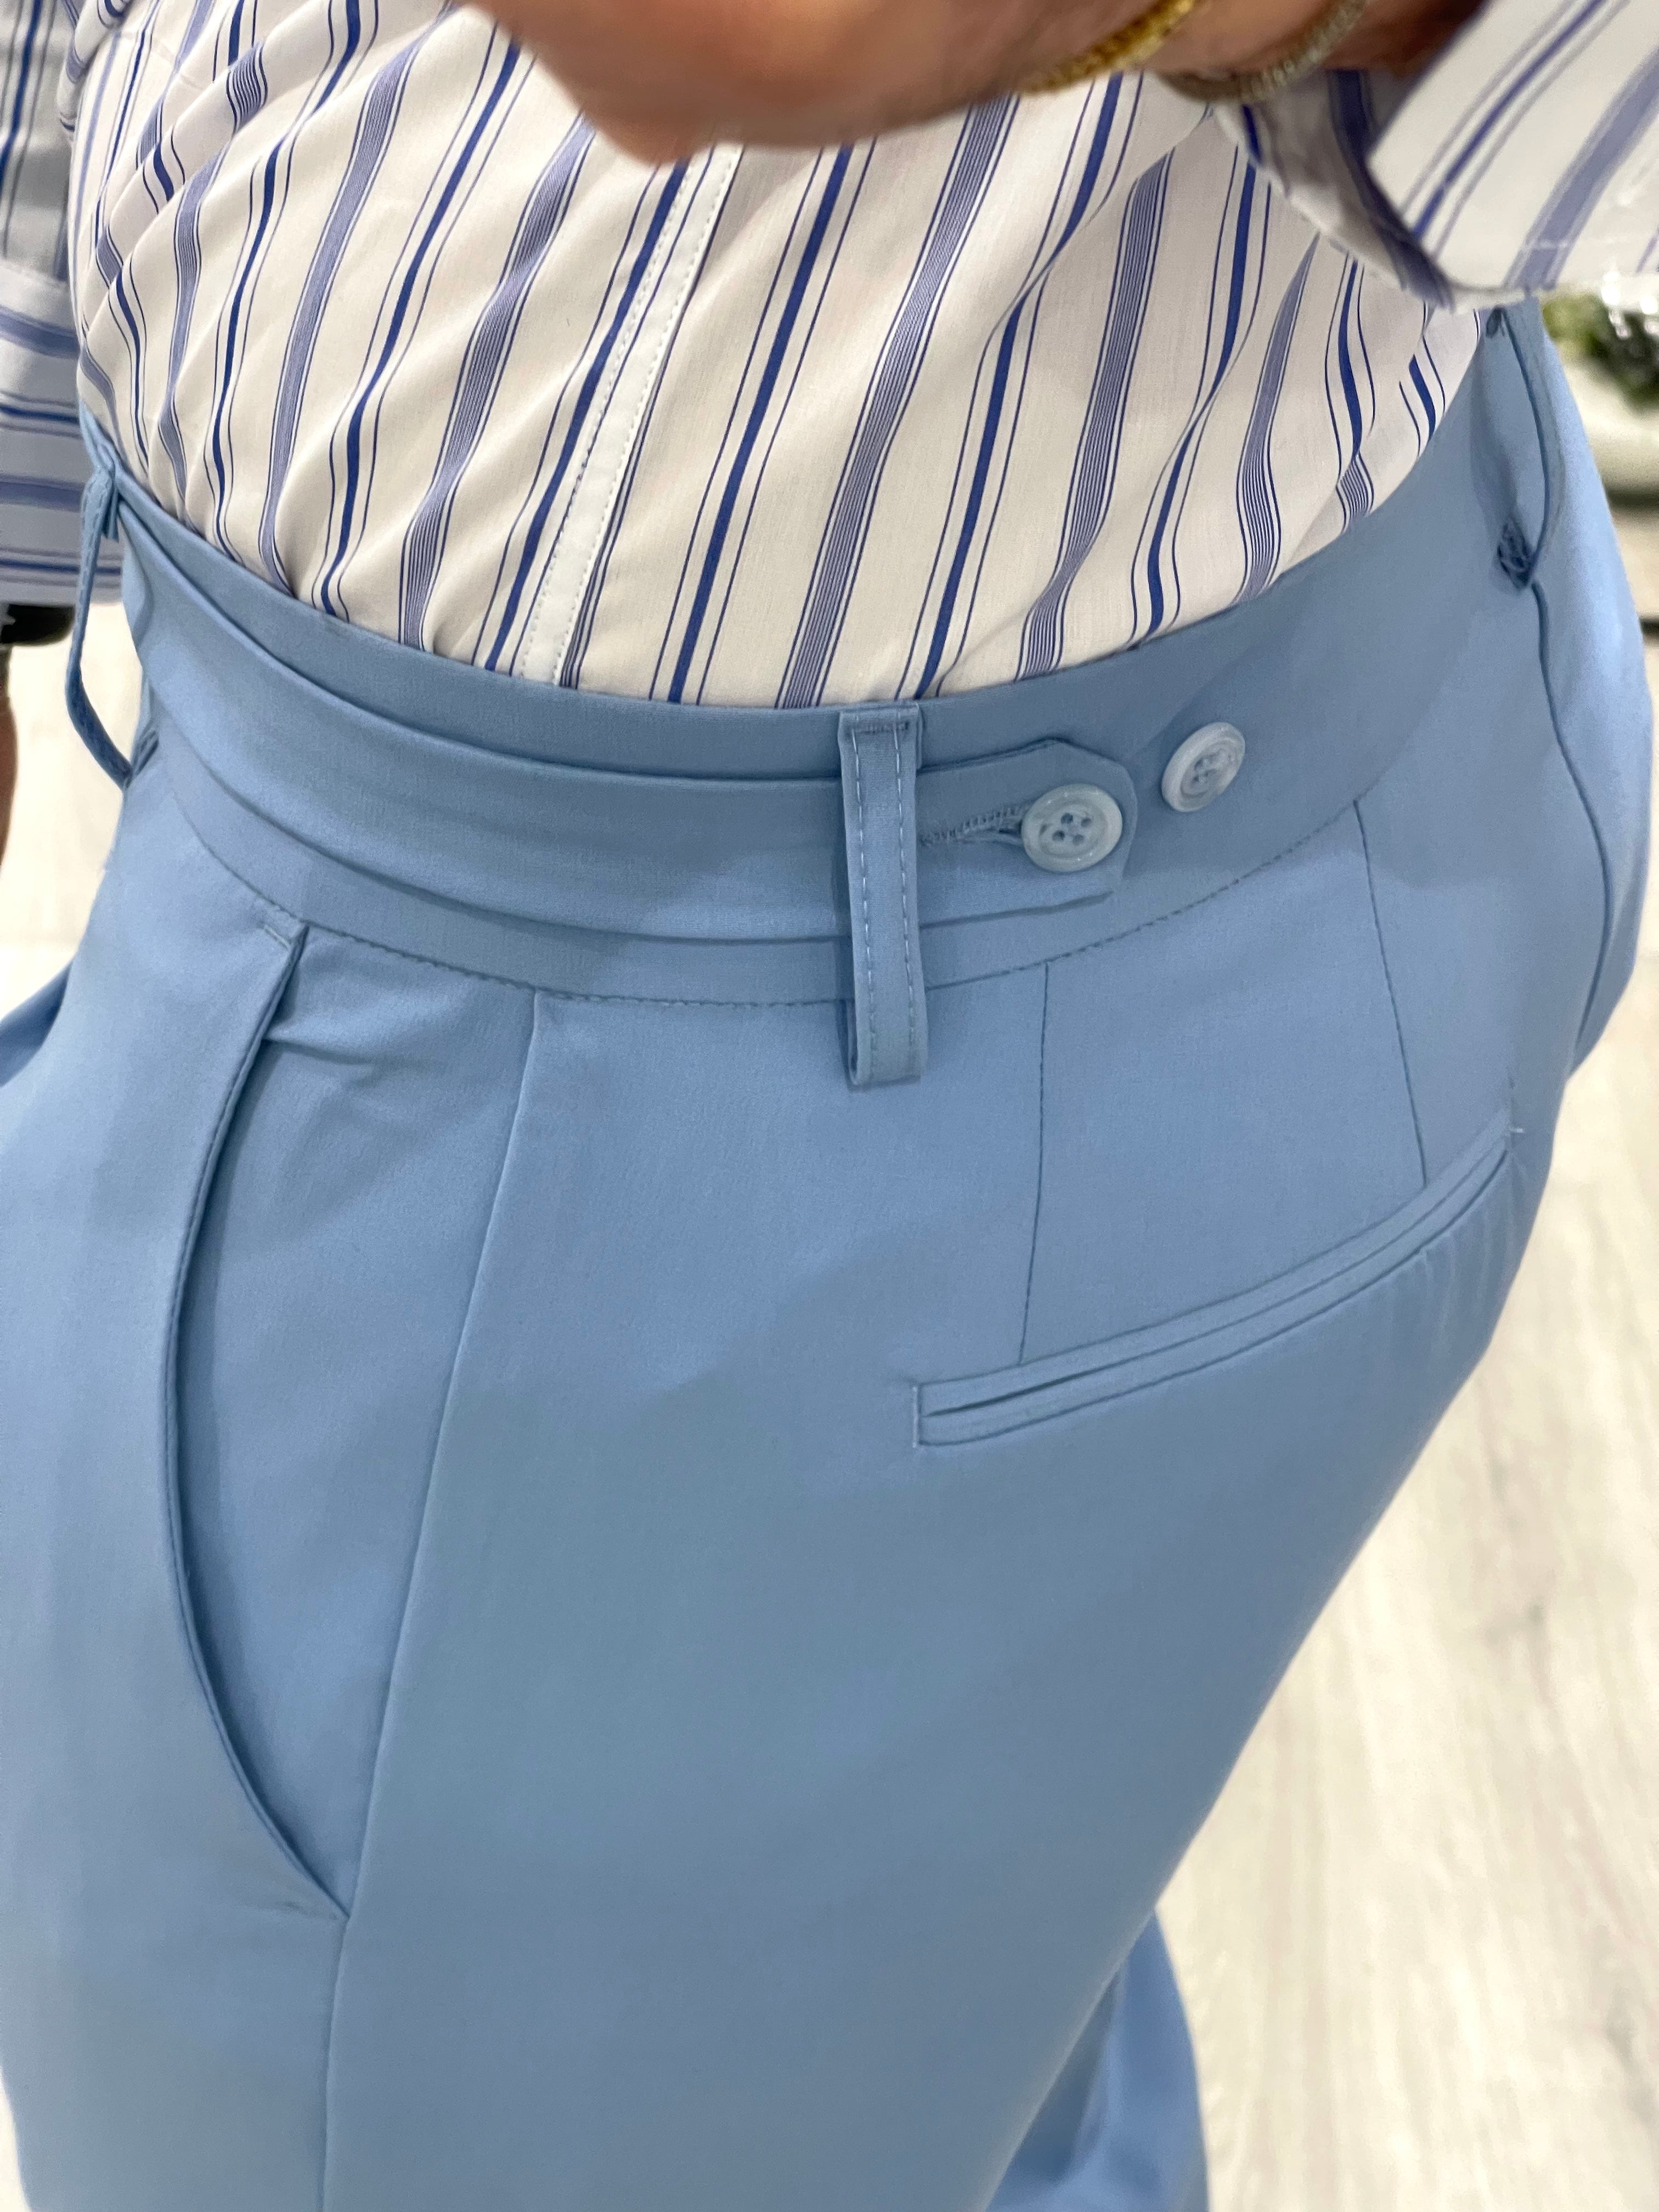 Pantalone sartoriale PARIS con fascione laterale e doppio bottone